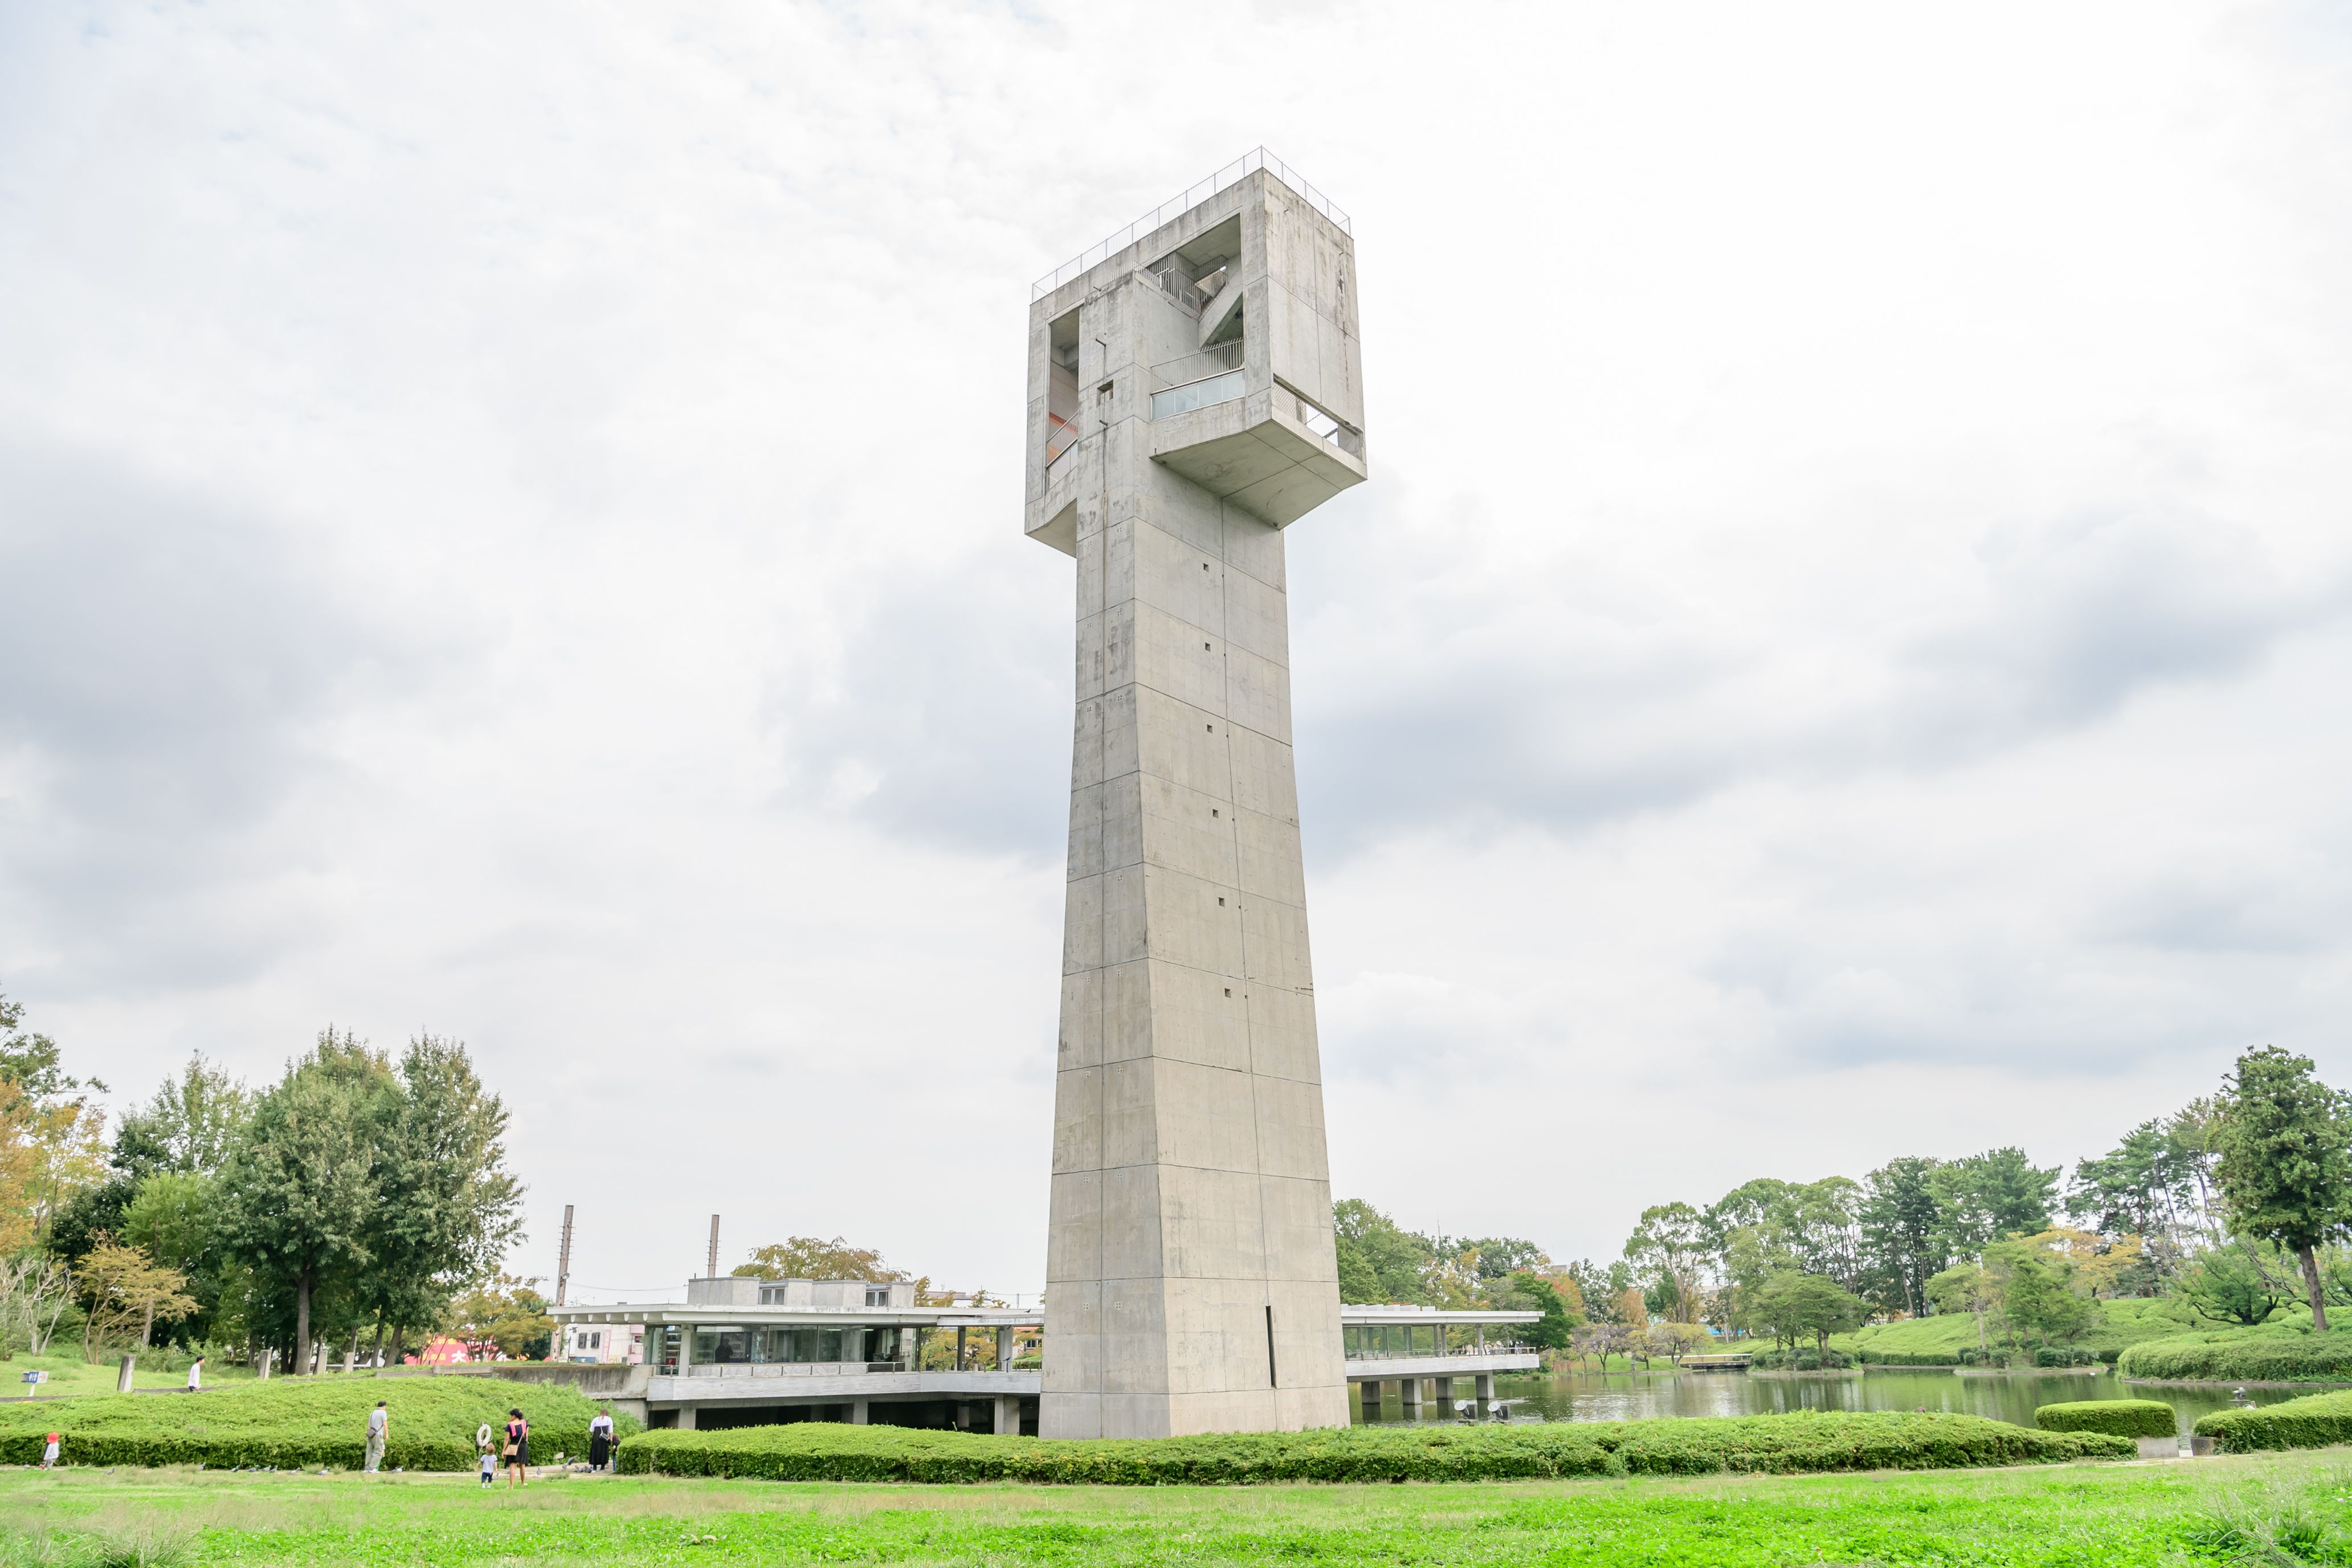 松見公園的一大亮點是由知名日本建築師菊竹清訓設計的高度達45米的展望塔